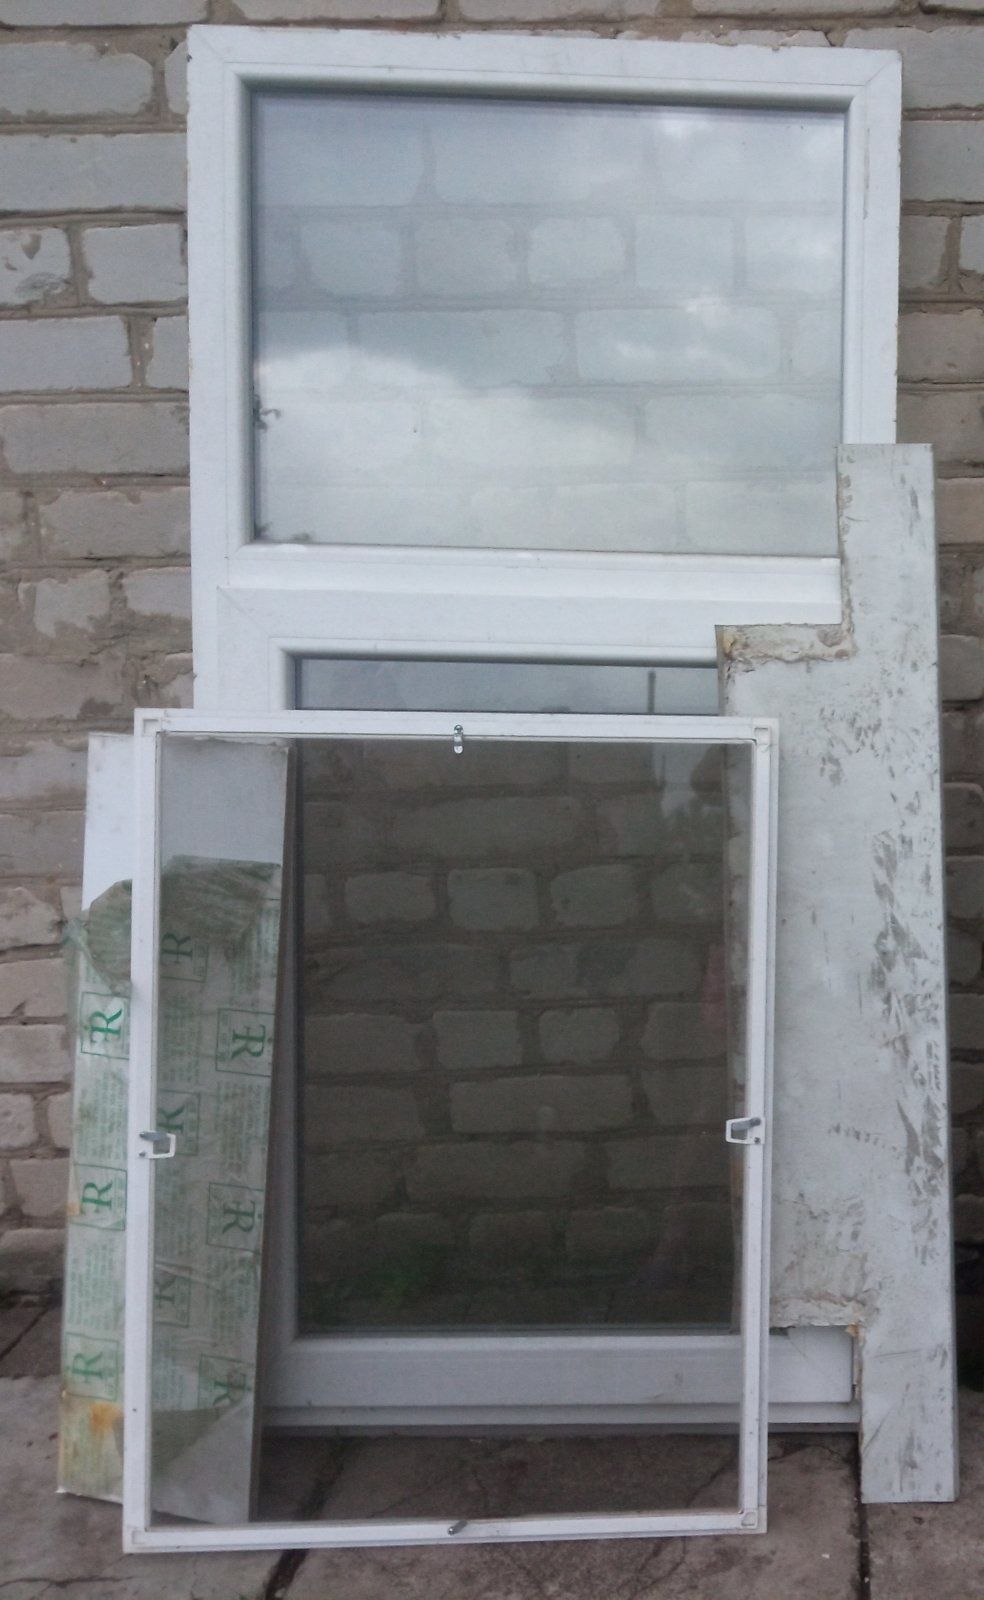 Металлопластиковое окно